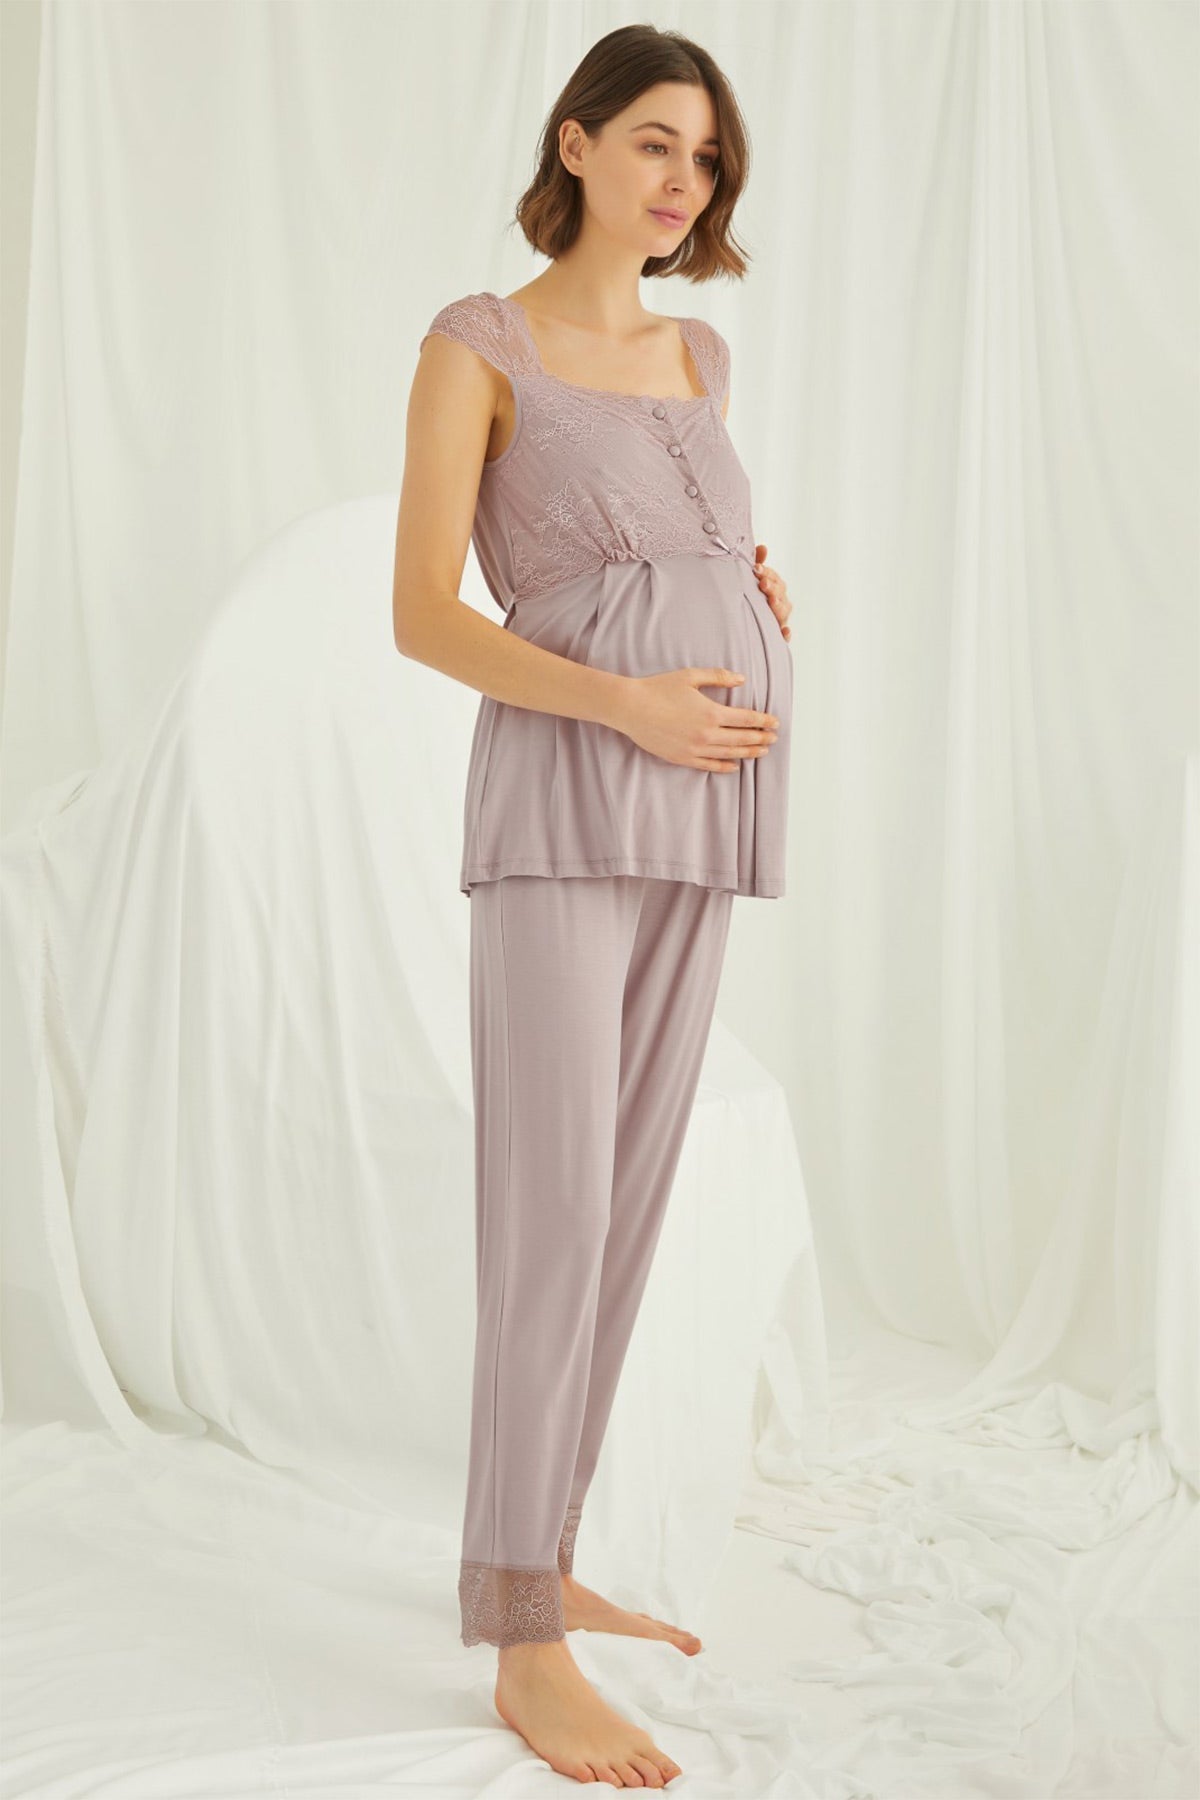 Shopymommy 18440 Lace Maternity & Nursing Pajamas Coffee